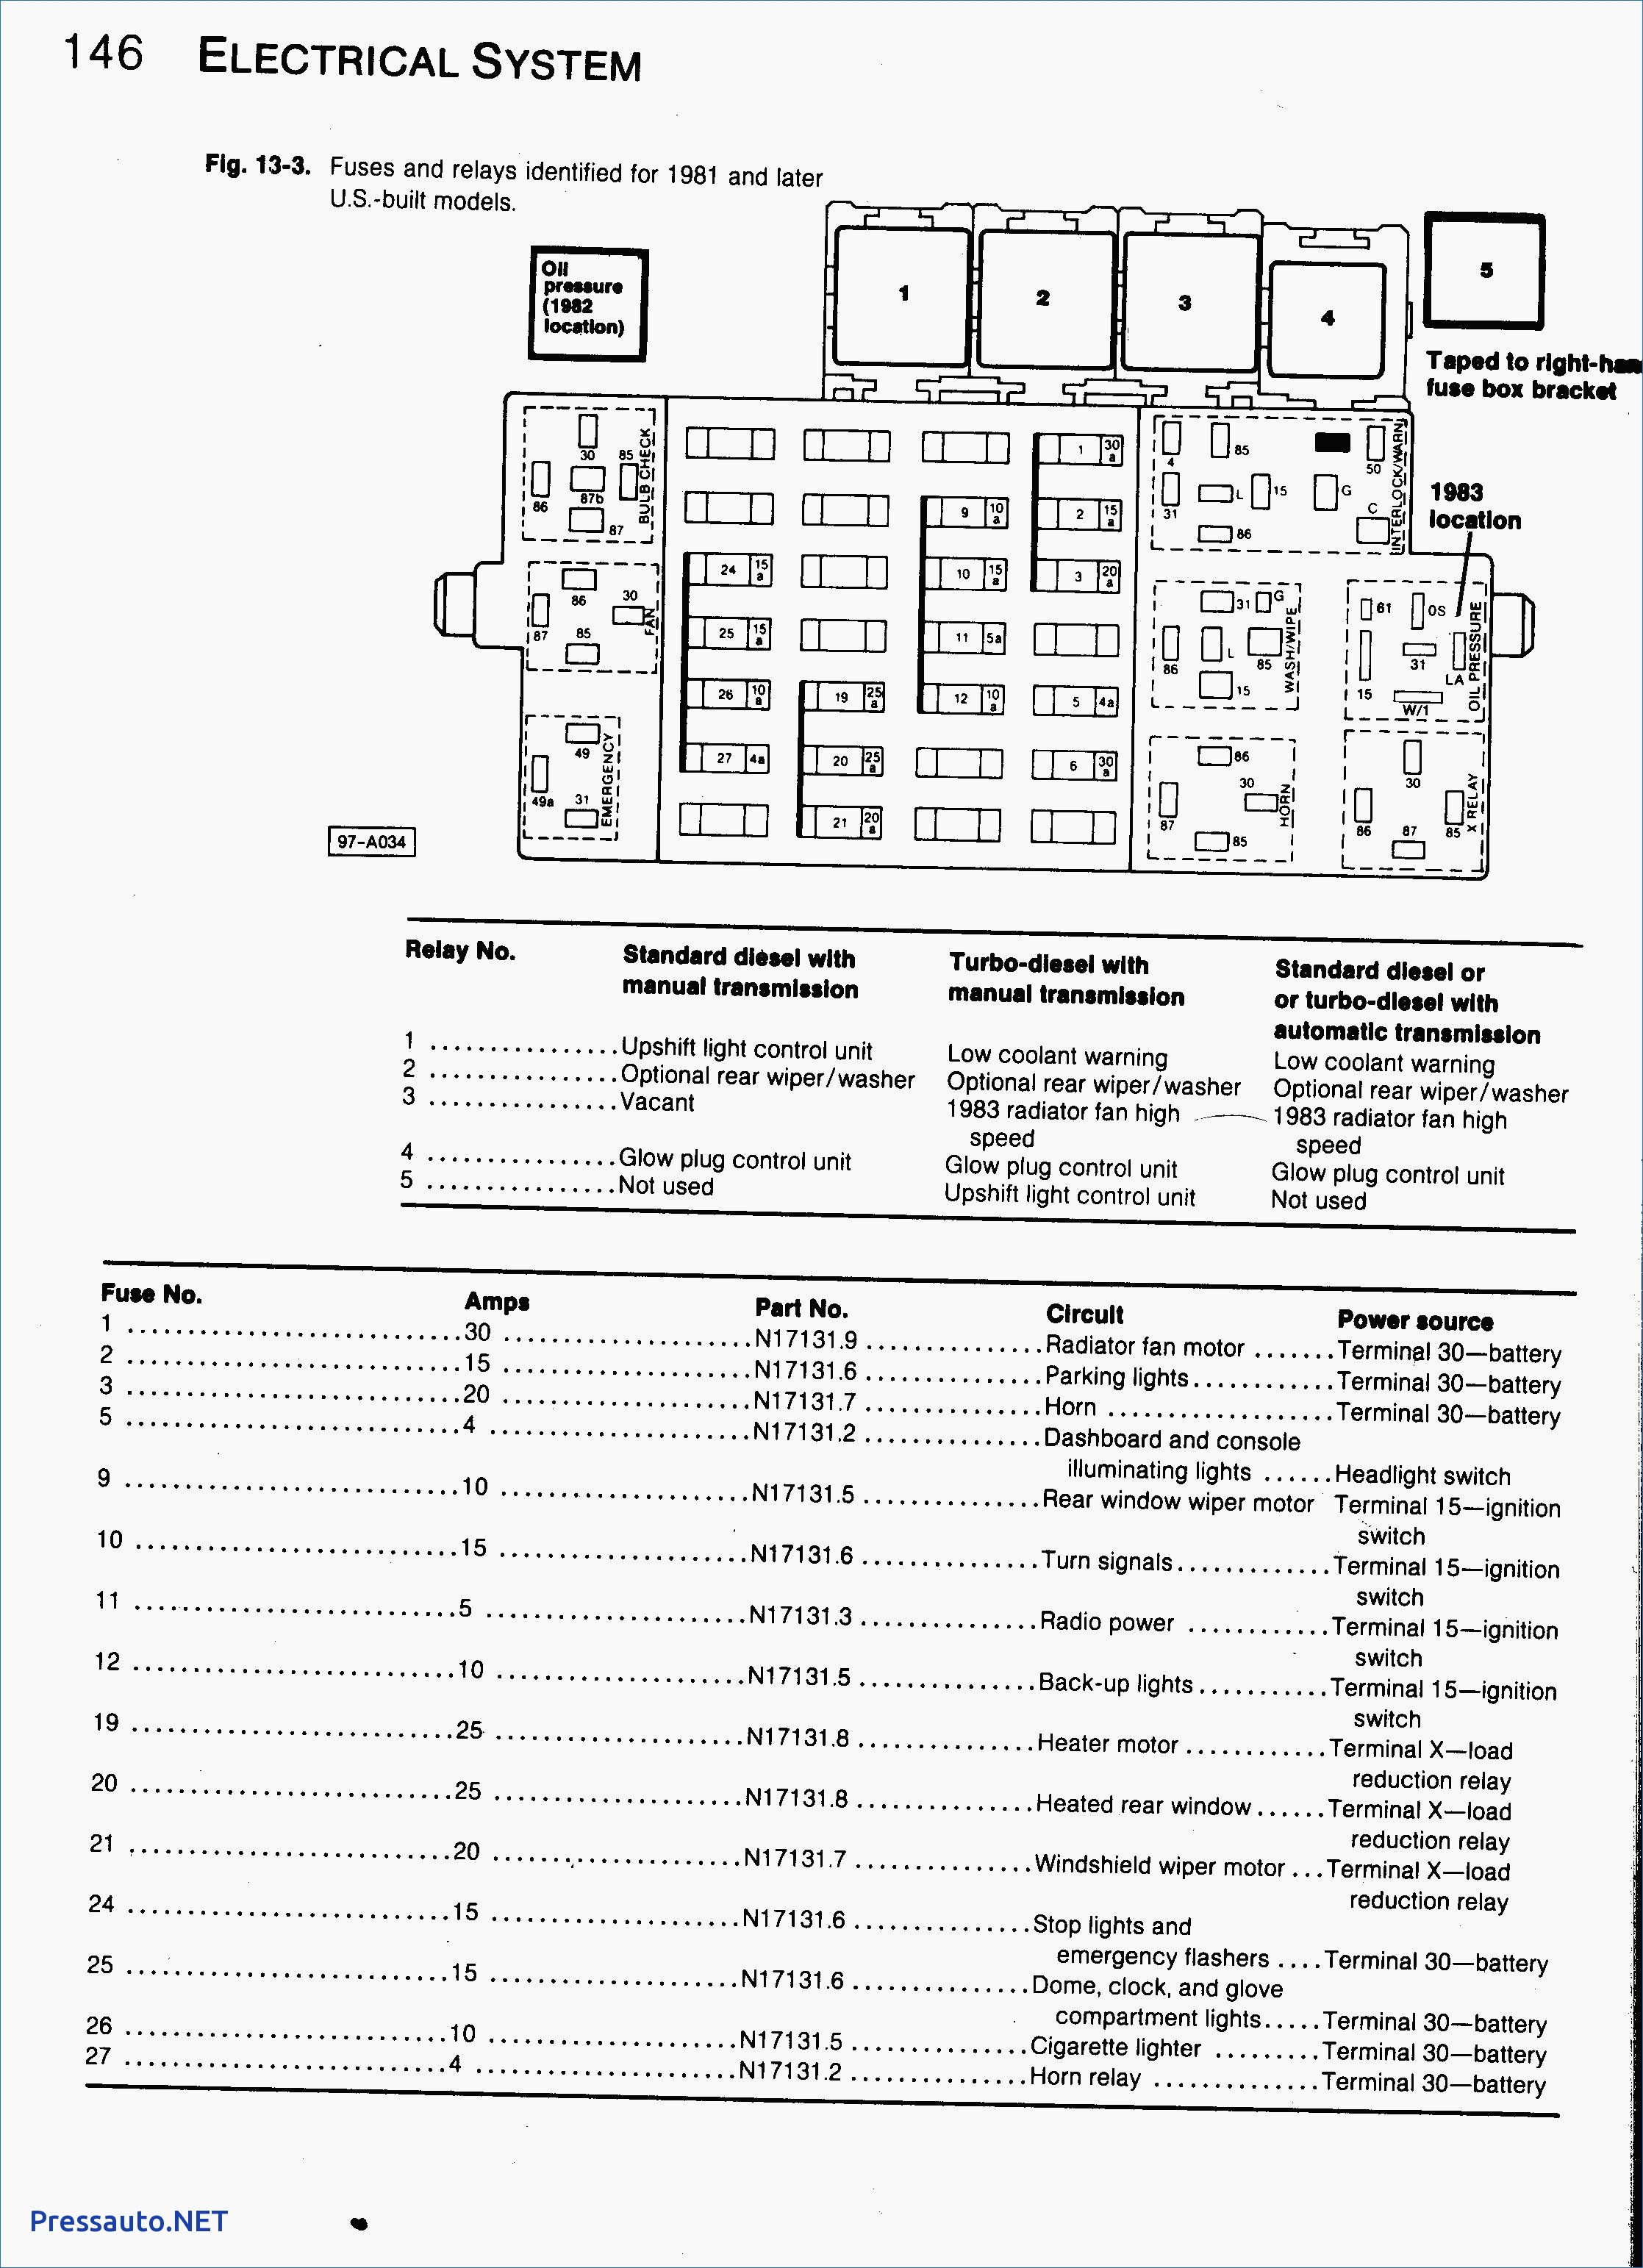 2002 Passat Engine Diagram 2012 Volkswagen Jetta Fuse Diagram Wiring Diagrams Schematics • Of 2002 Passat Engine Diagram